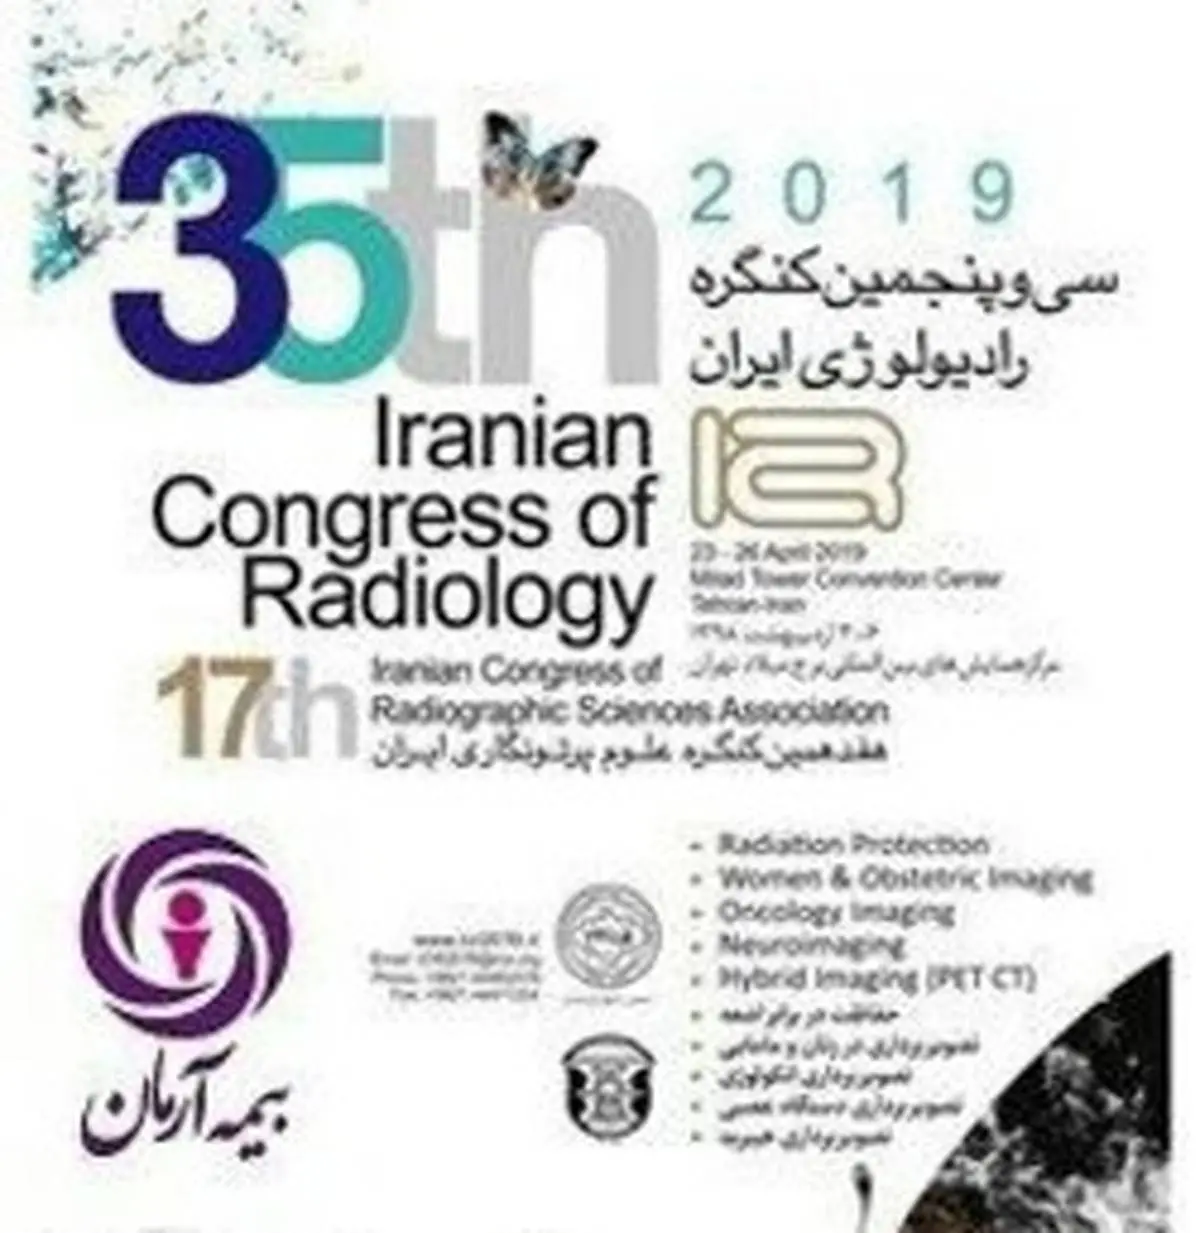 حضور گسترده بیمۀ آرمان در کنگره ملی رادیولوژی ایران